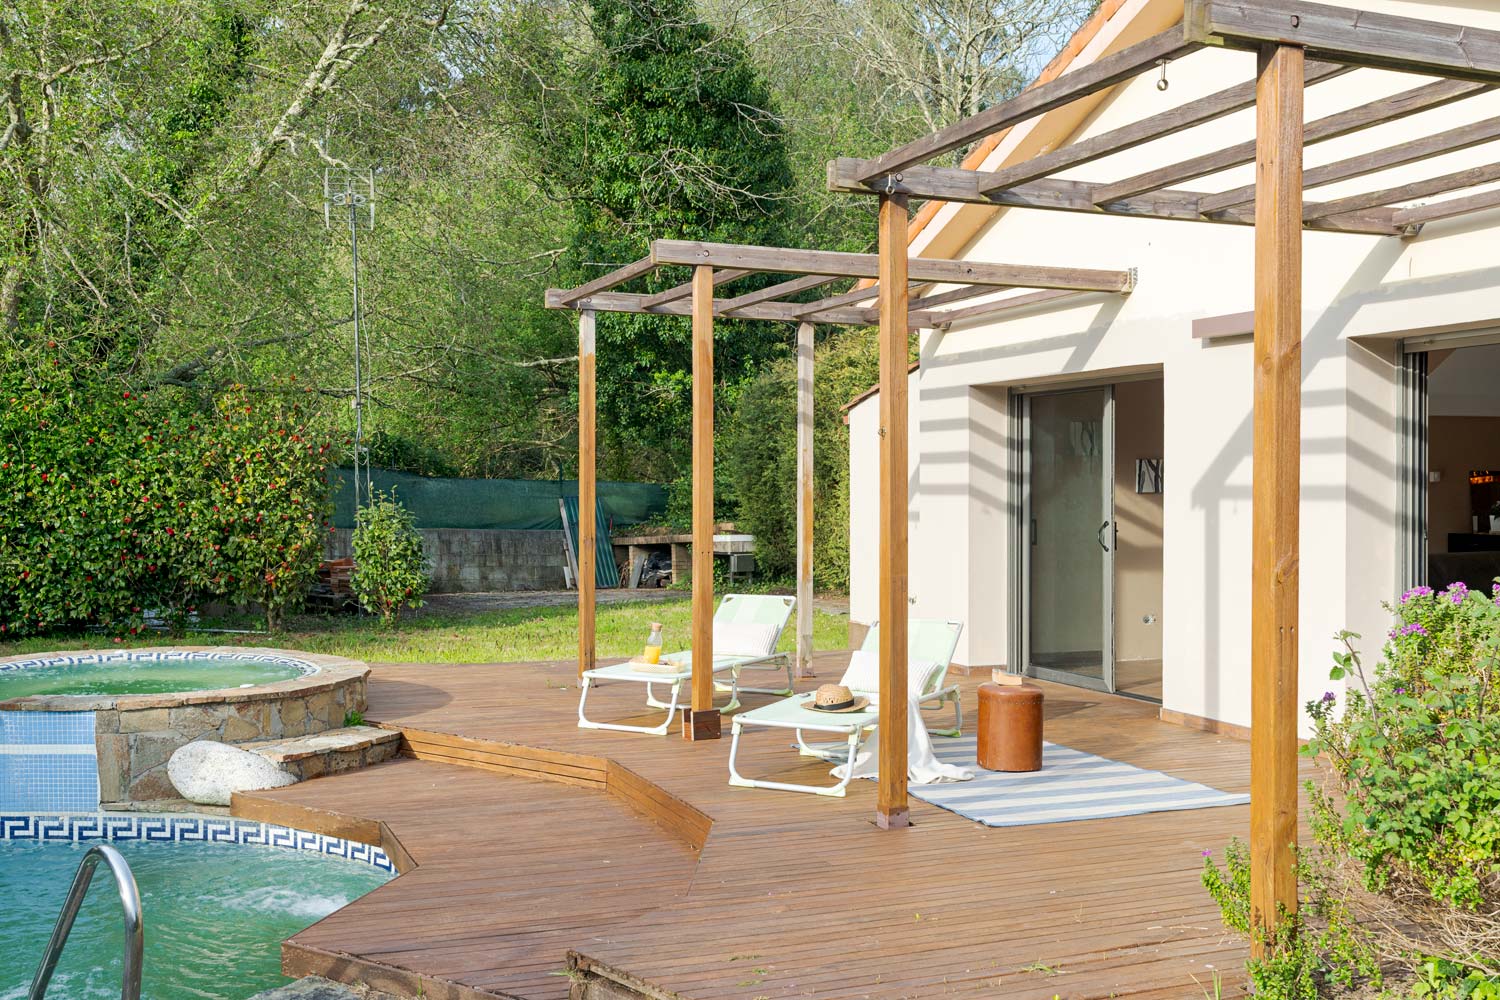 Zona de descanso exterior en una casa unifamiliar, con terraza de madera, pérgola, tumbonas y piscina, ofreciendo un oasis de relajación al aire libre